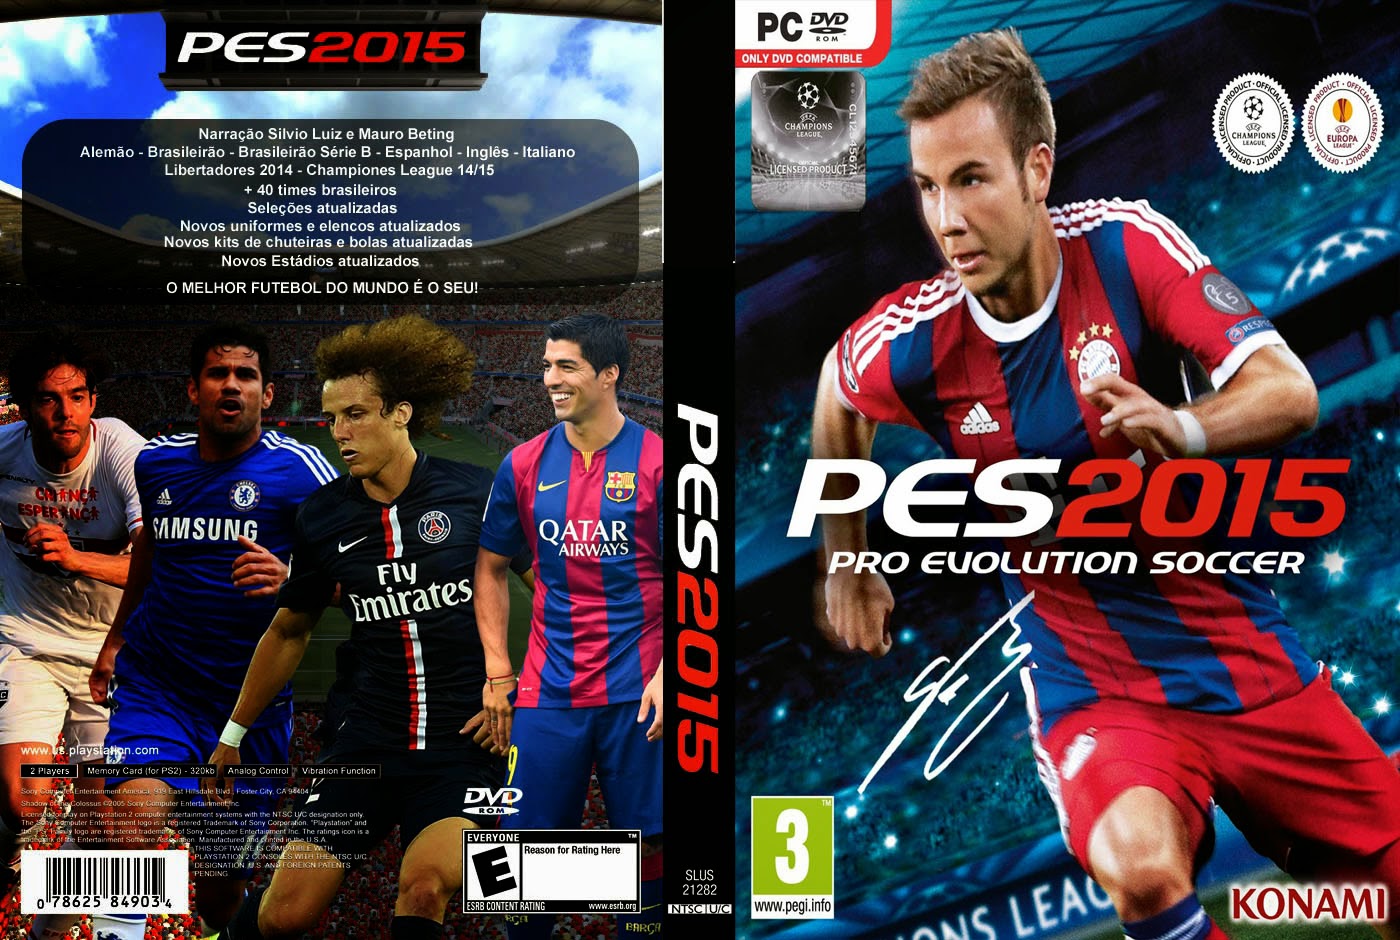 pro evolution soccer 2015 pc download